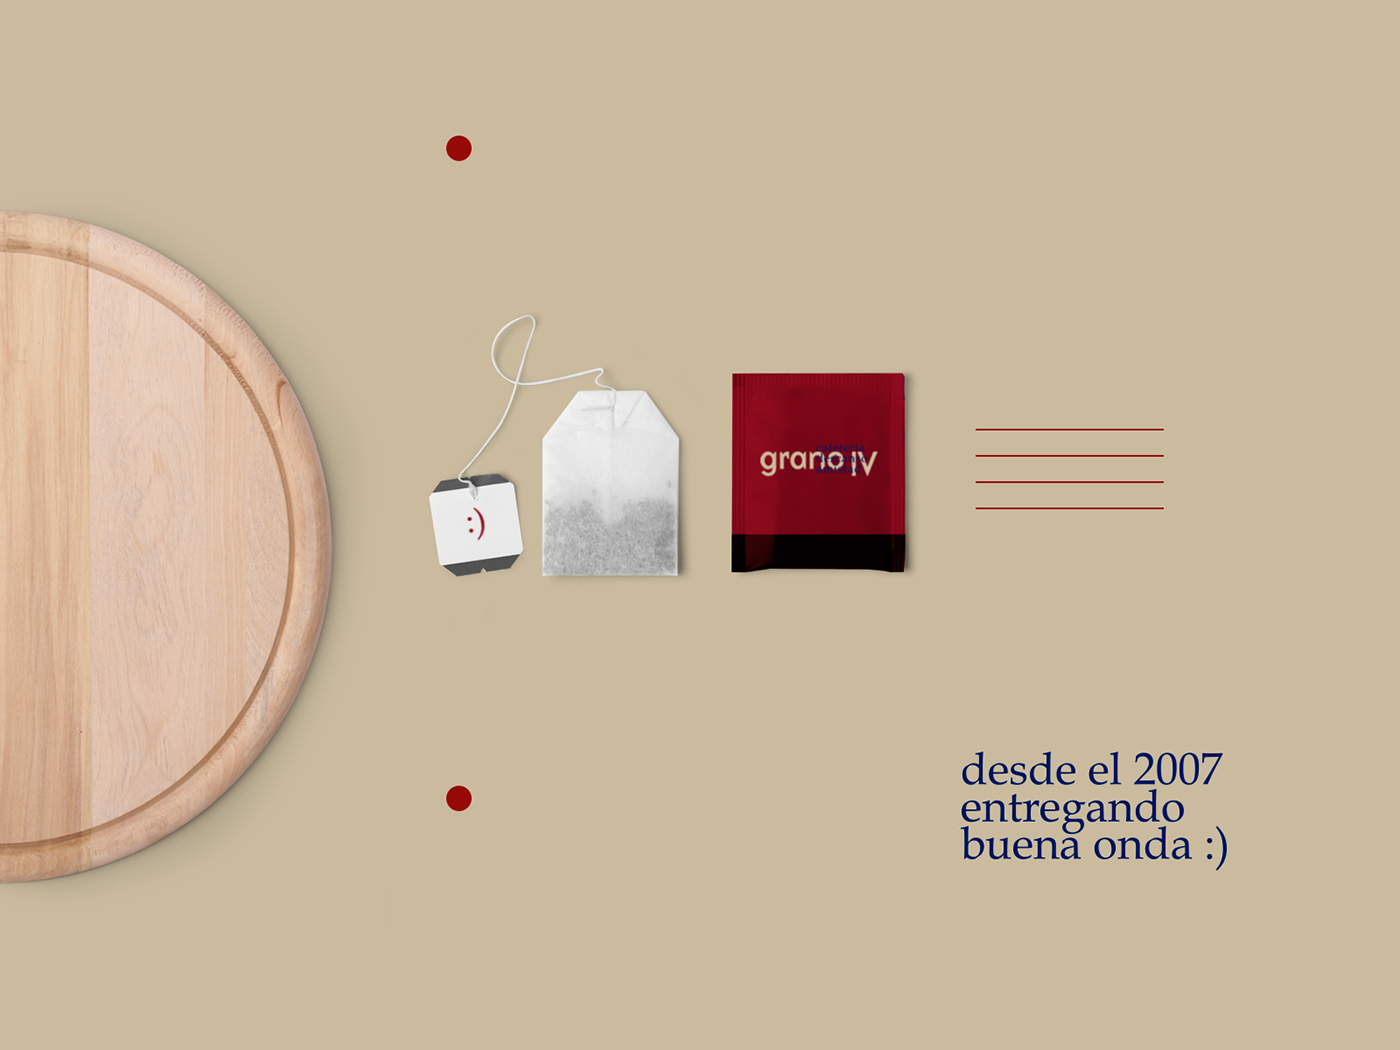 promo Coffee chile grano iv design brand marcas identidad